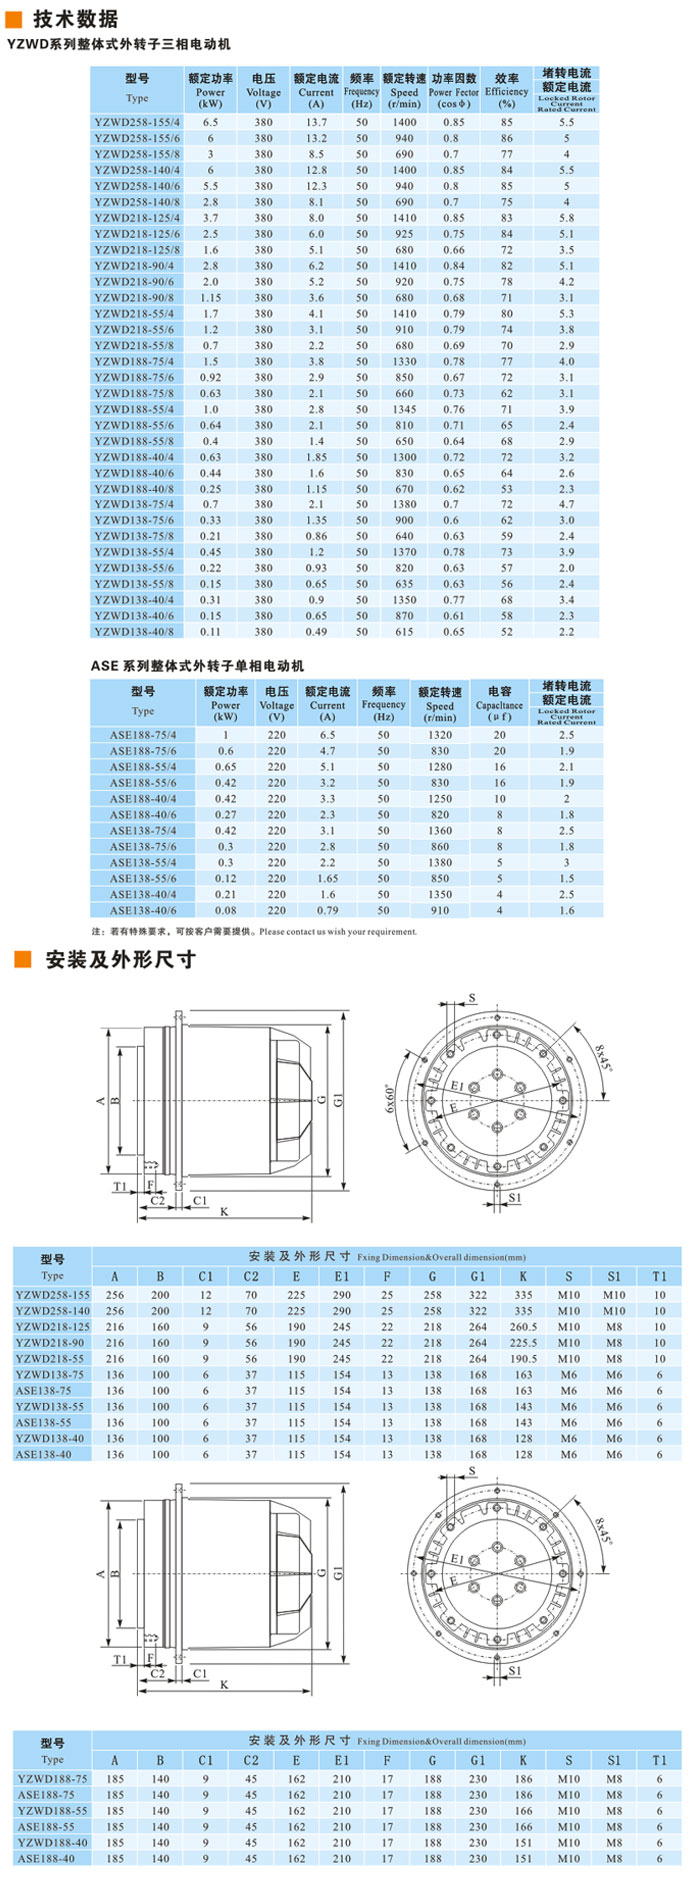 【九洲风机】YZWD-ASD系列整体式体外转子电动机厂家直销批发价格图片